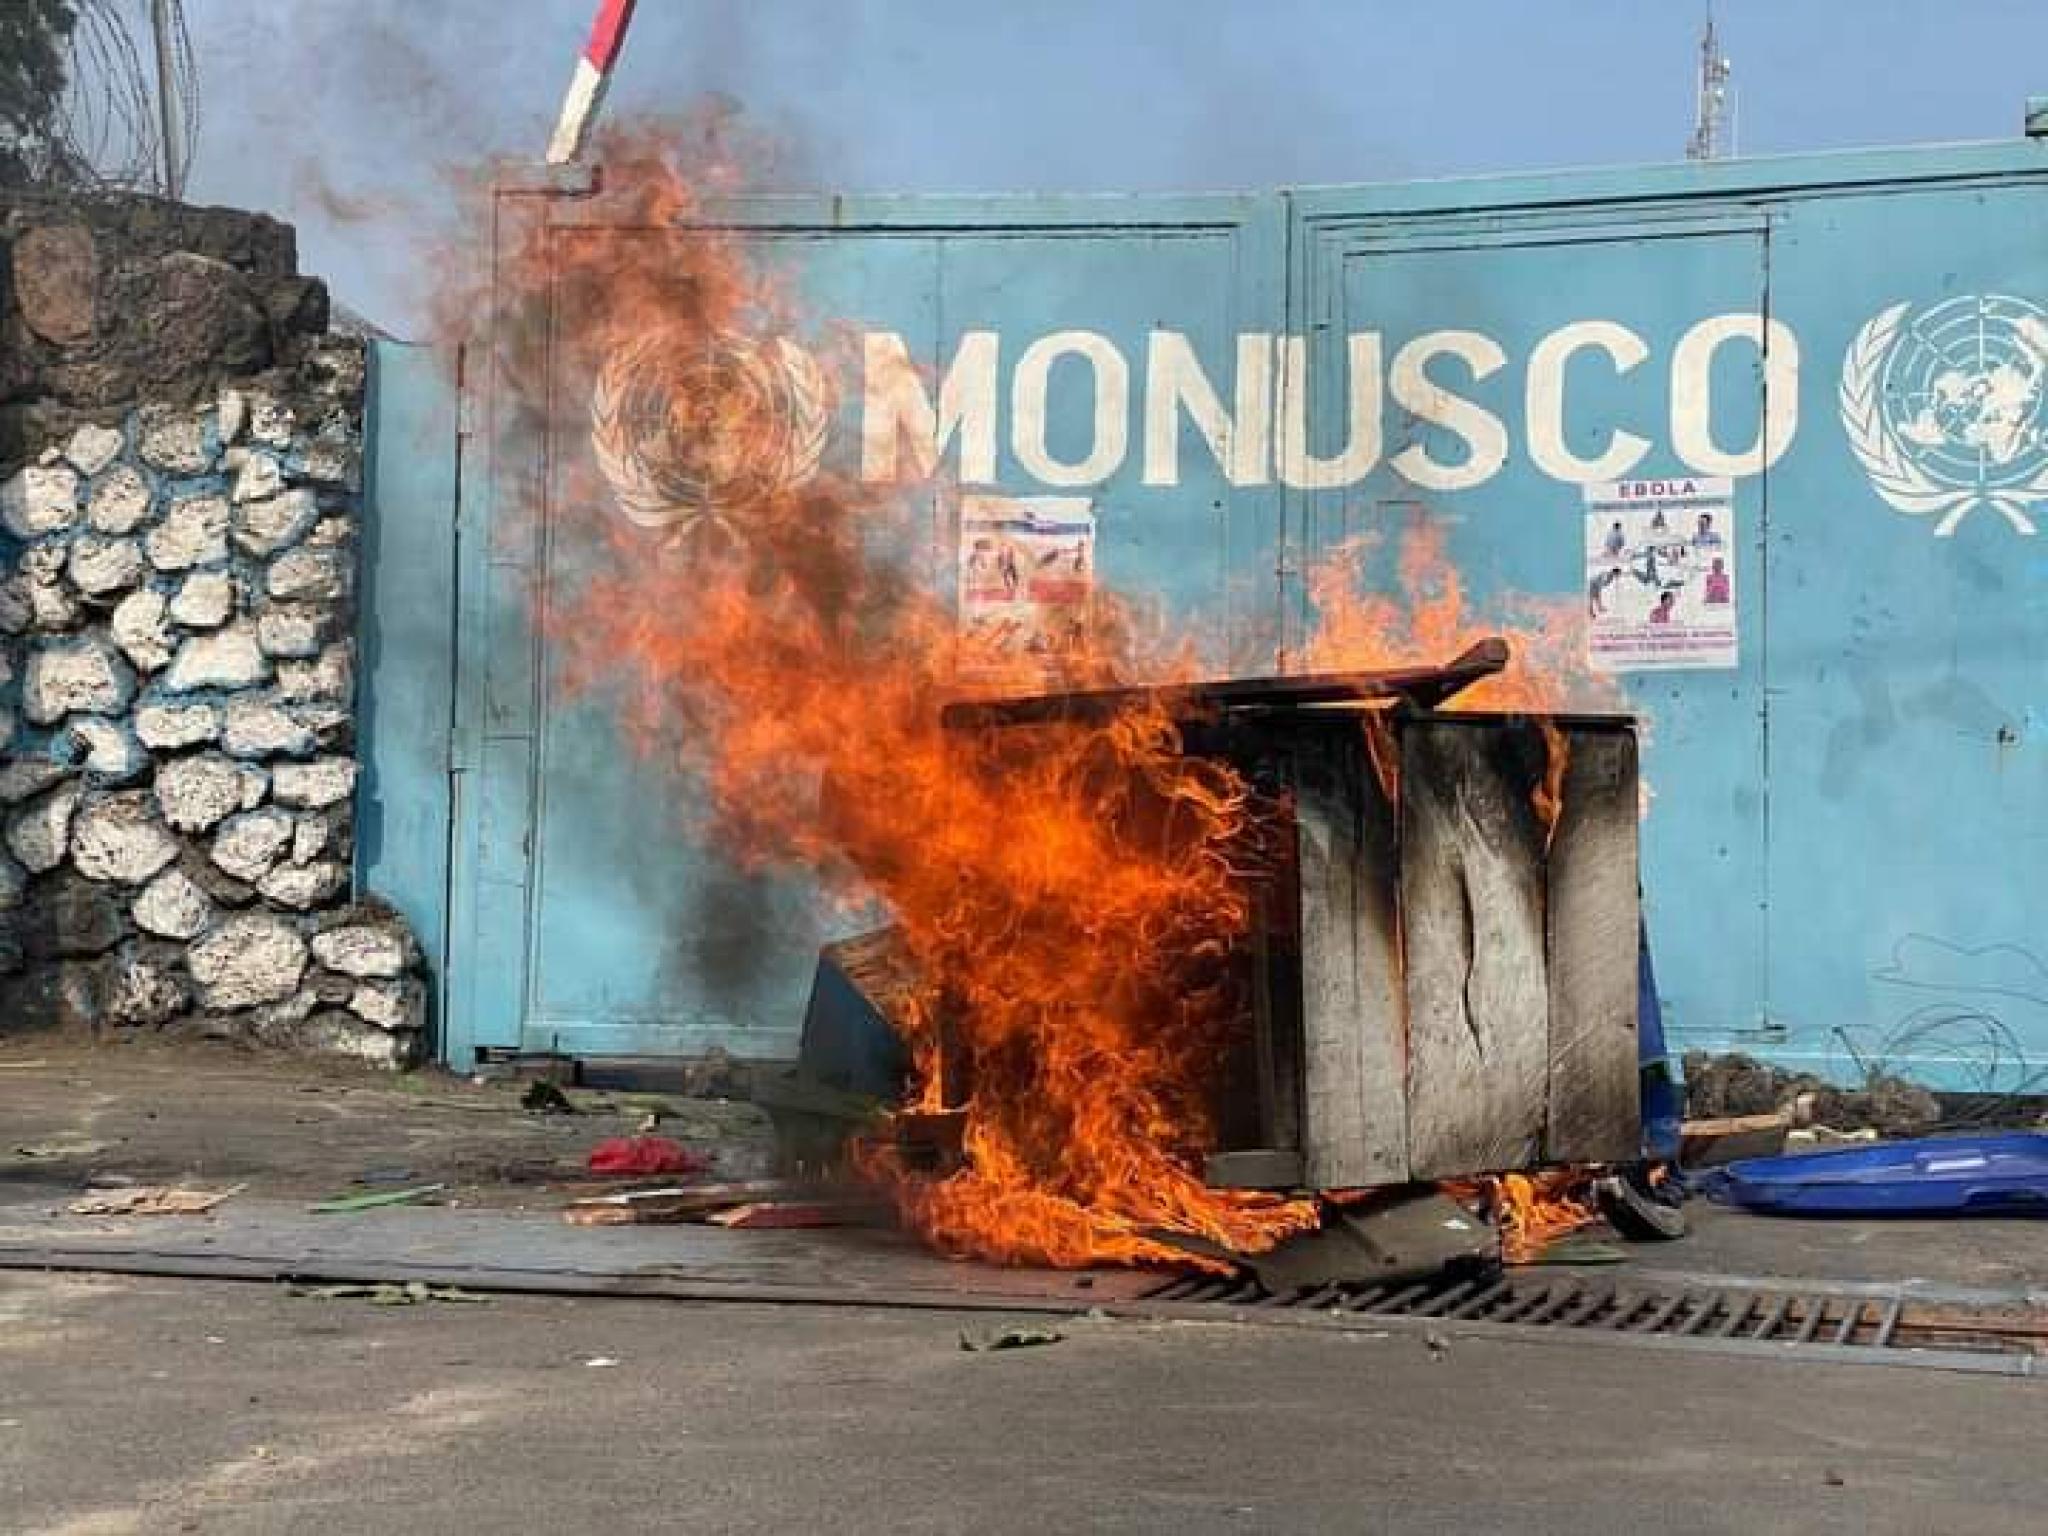 Les objets en bois prennent feu devant la  grille du QG de la Monusco à Goma